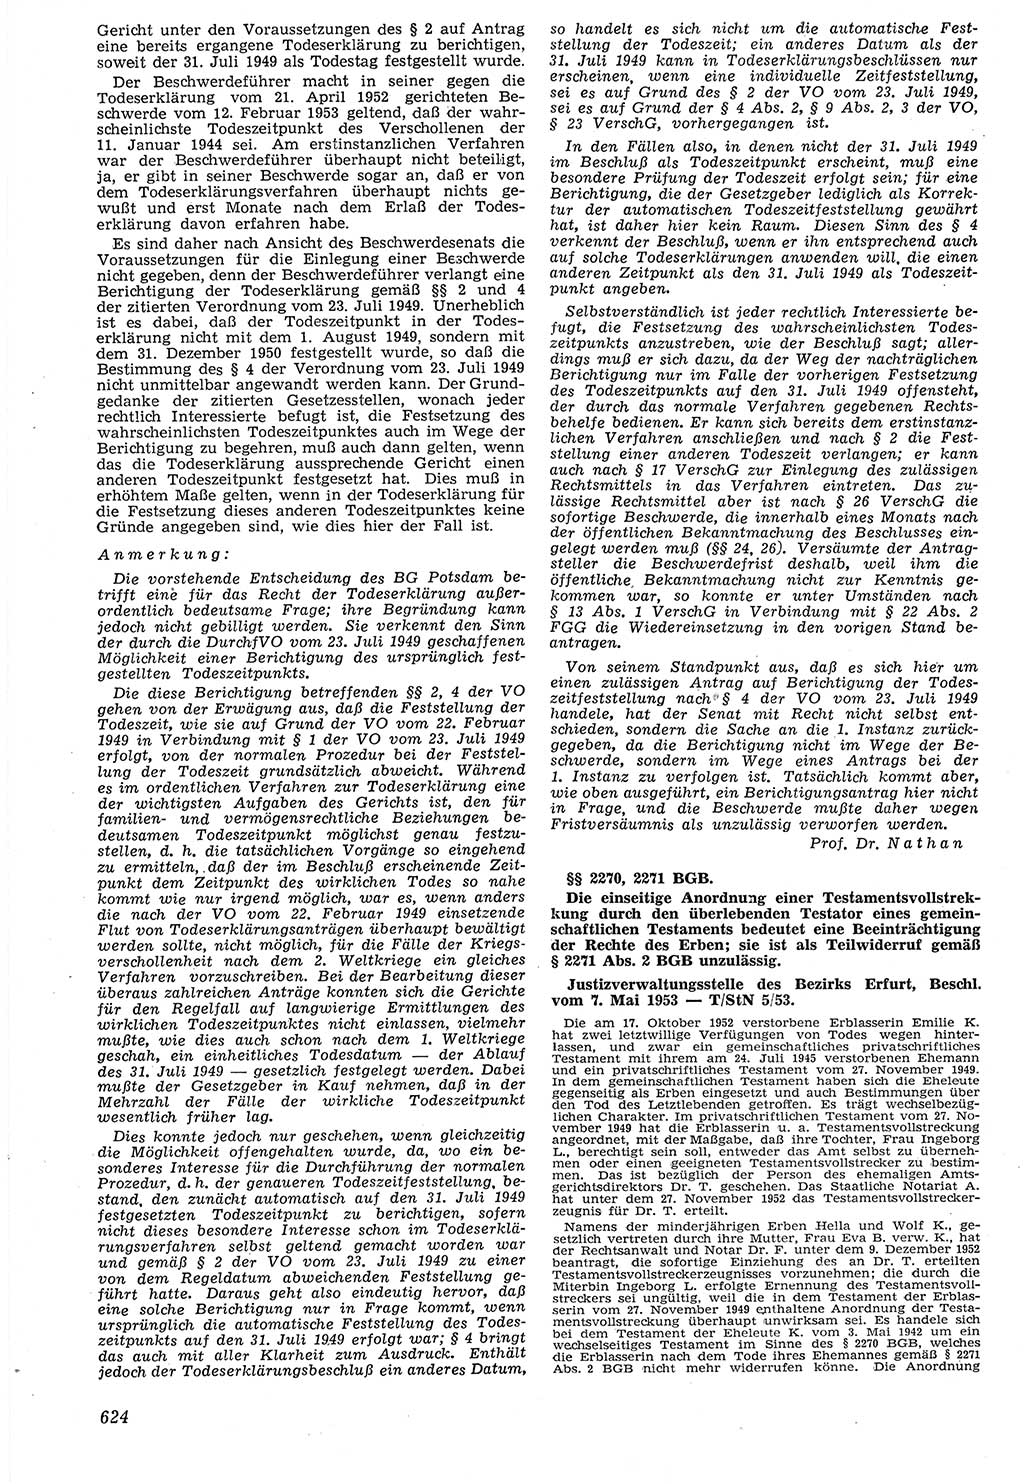 Neue Justiz (NJ), Zeitschrift für Recht und Rechtswissenschaft [Deutsche Demokratische Republik (DDR)], 7. Jahrgang 1953, Seite 624 (NJ DDR 1953, S. 624)